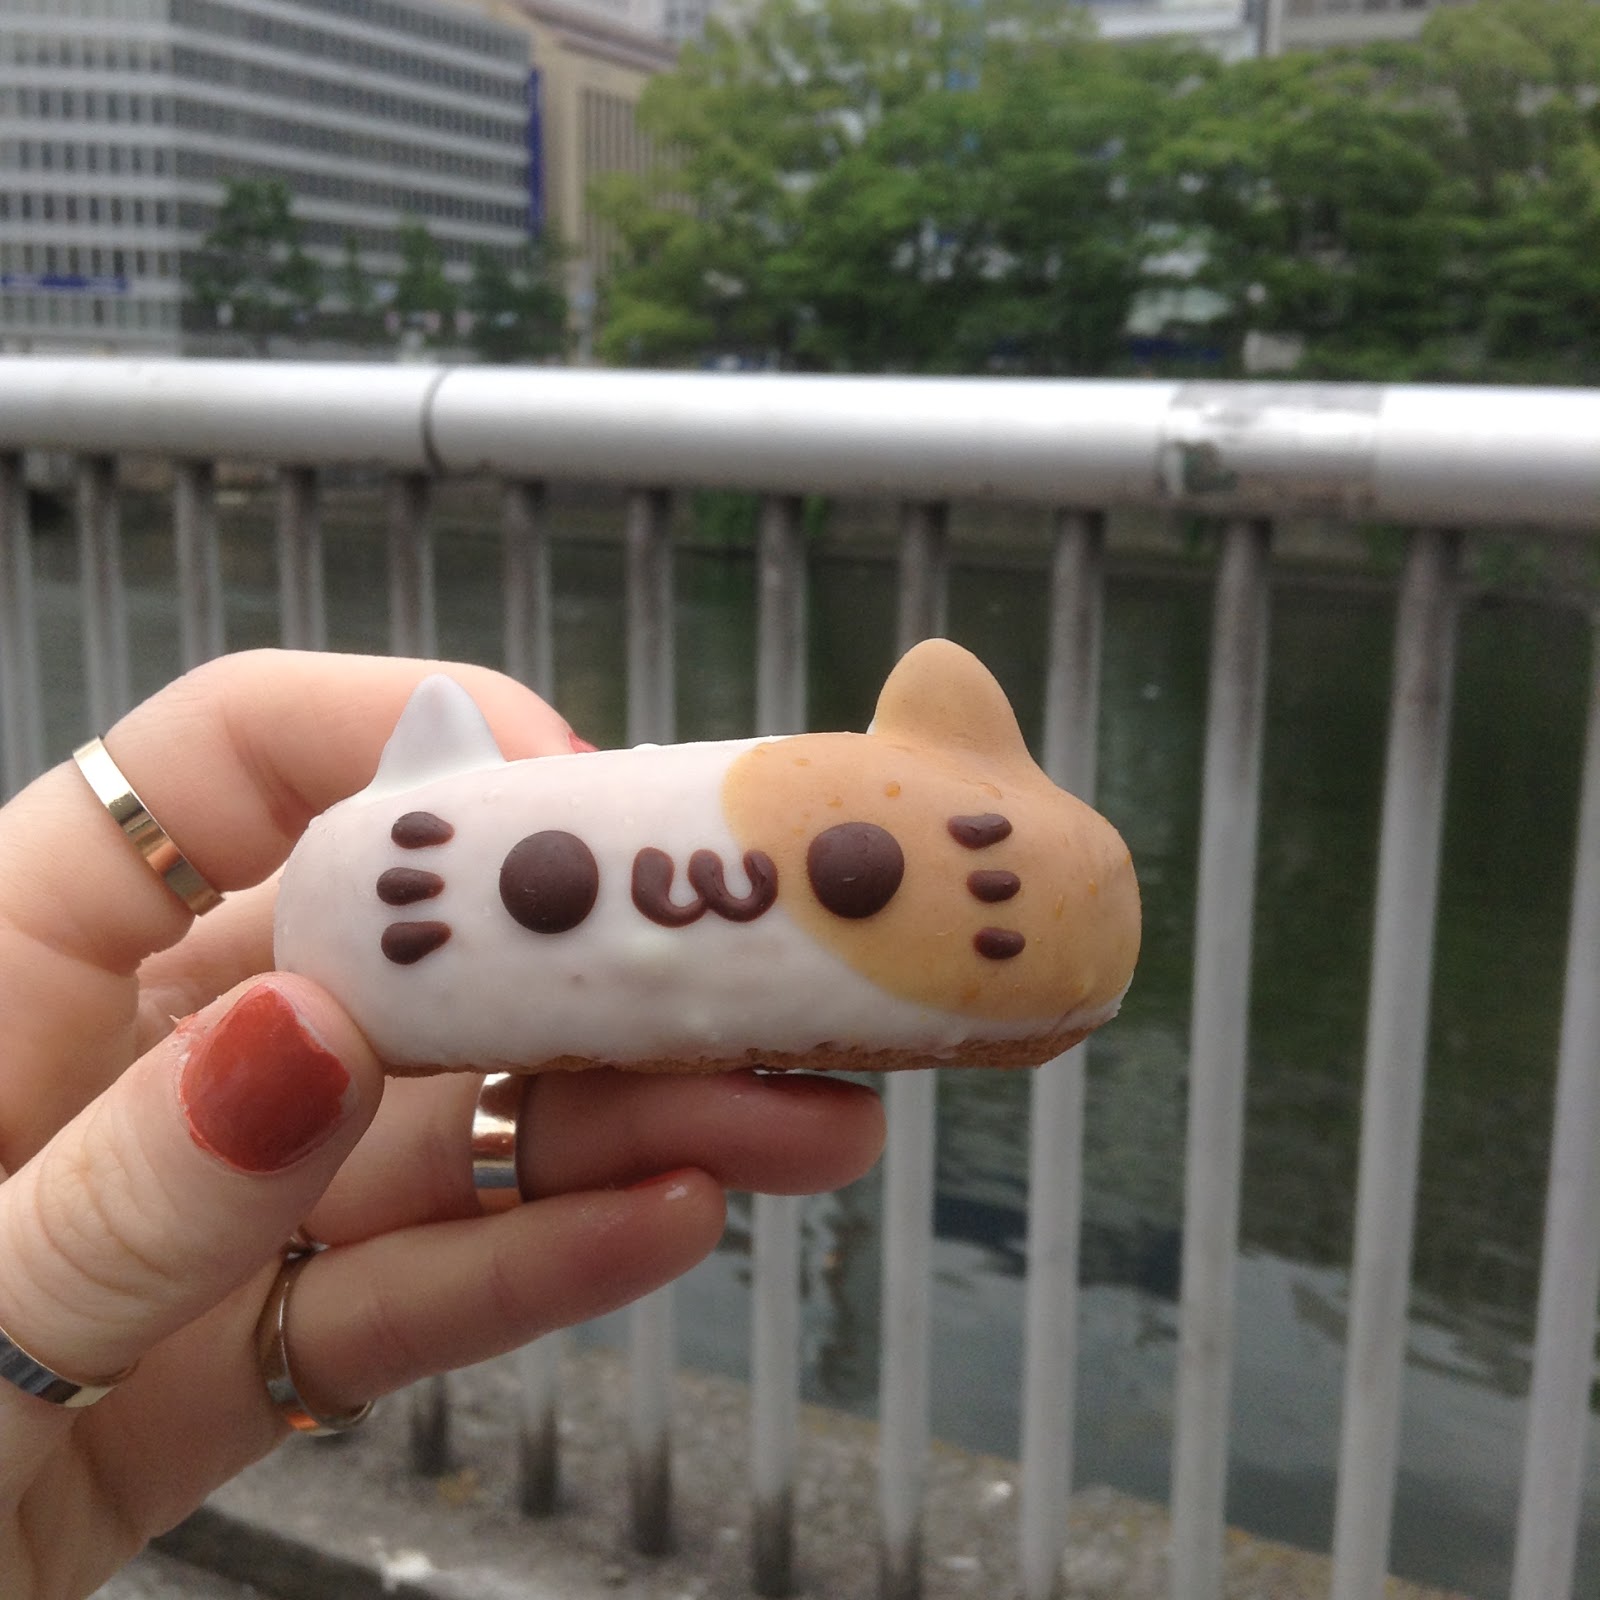 Japan cute cat donut